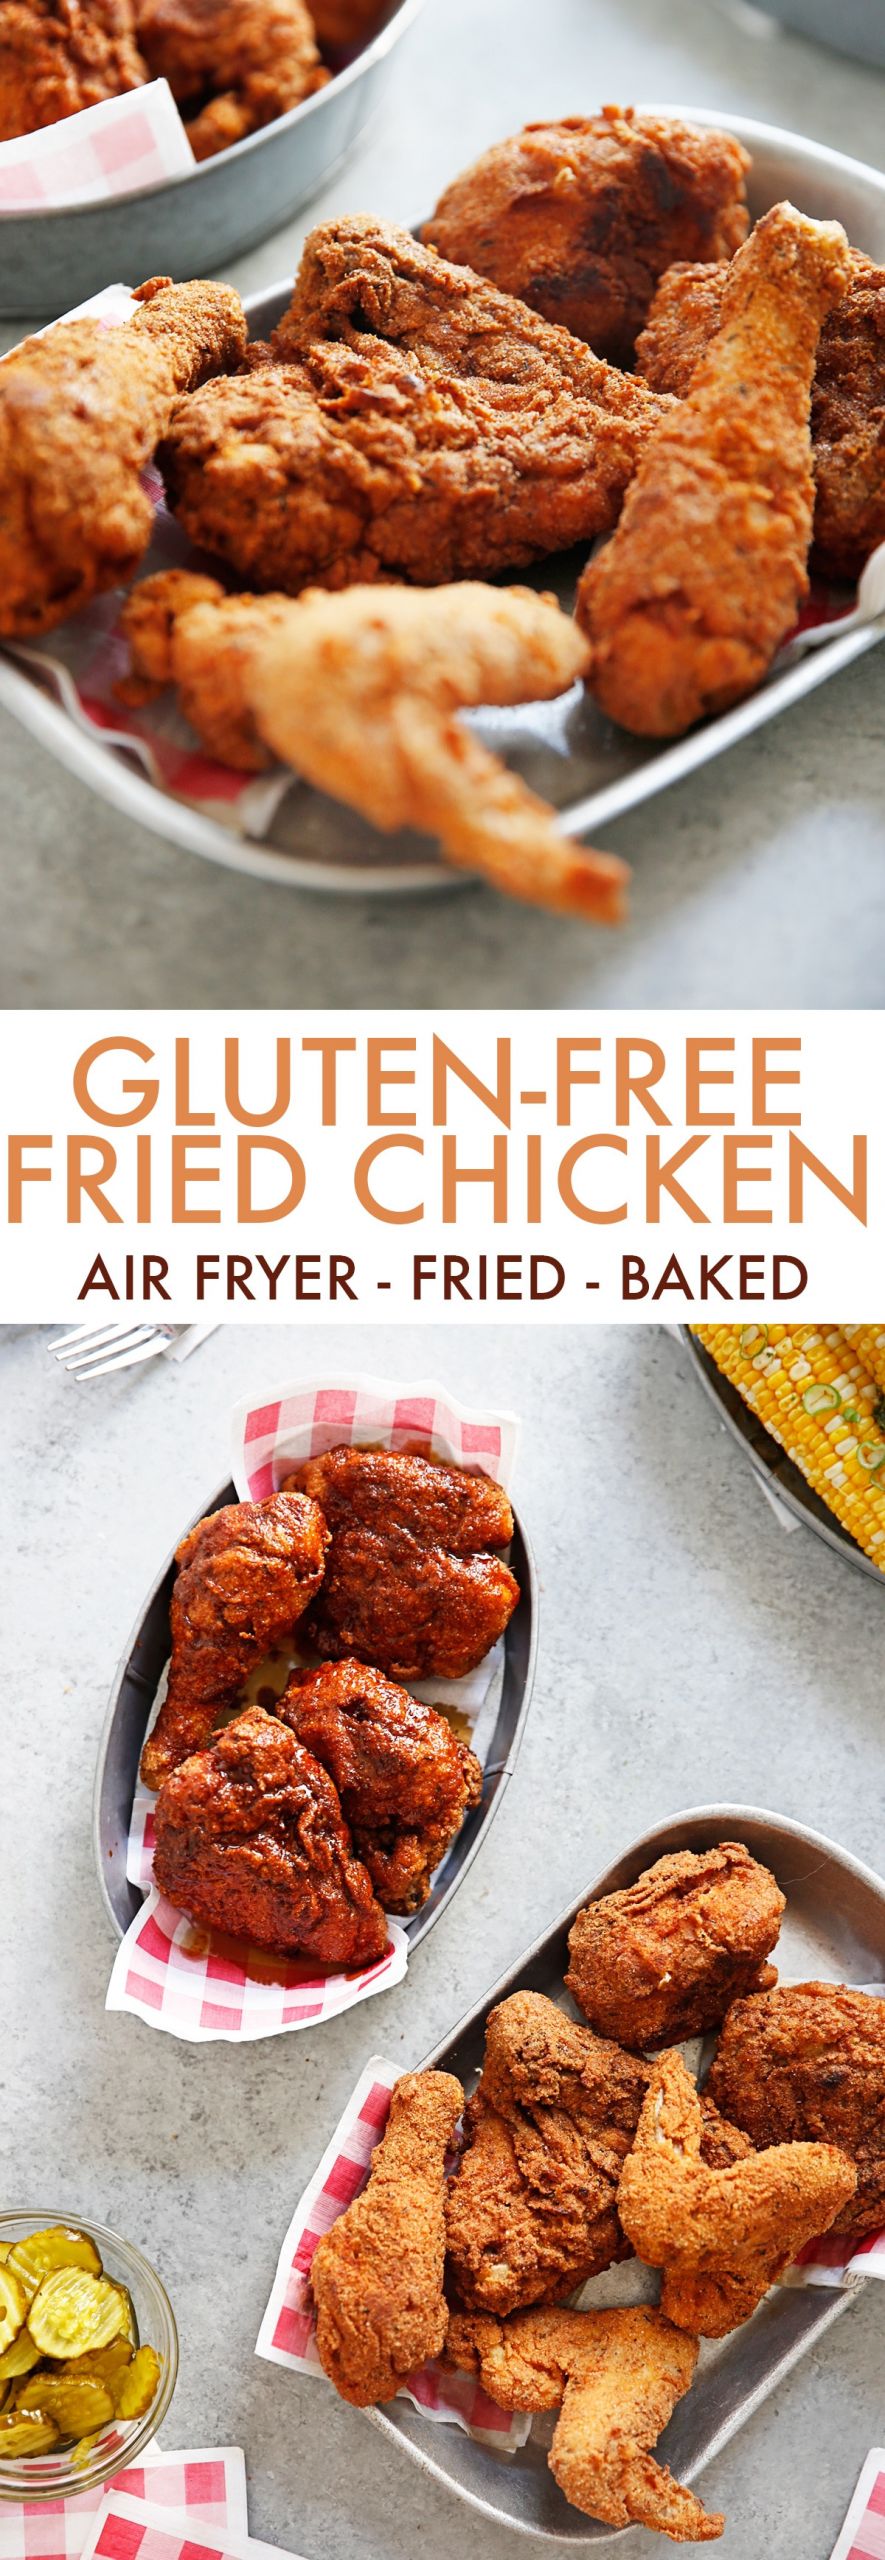 Gluten Free Fried Chicken
 The Ultimate Gluten Free Fried Chicken Lexi s Clean Kitchen